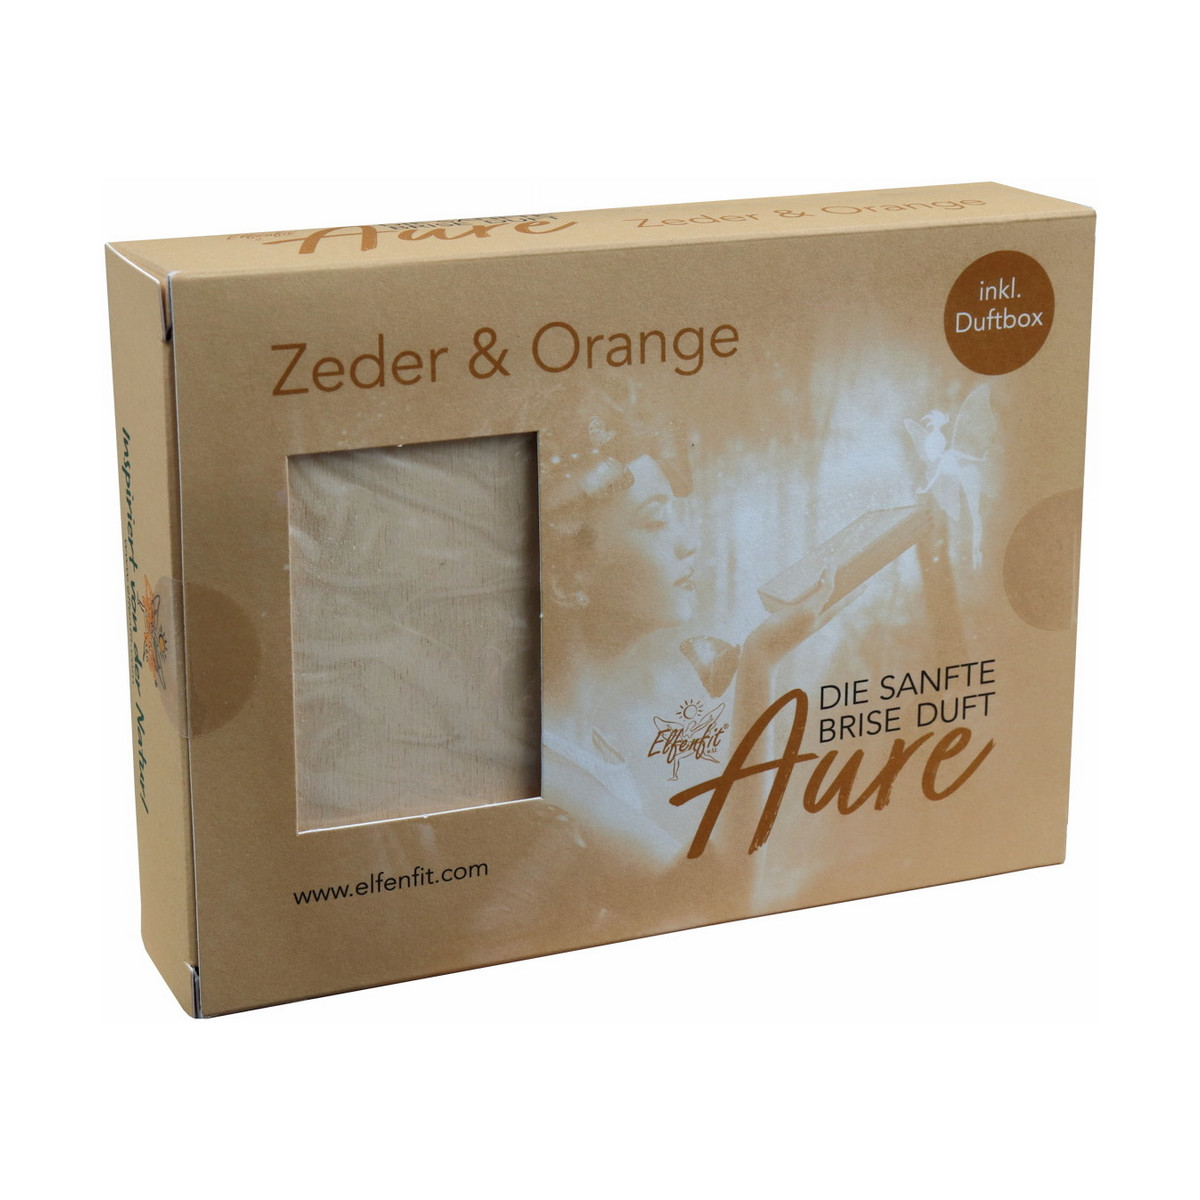 Elfenfit Aure Zeder & Orange mit Duftbox groß -...